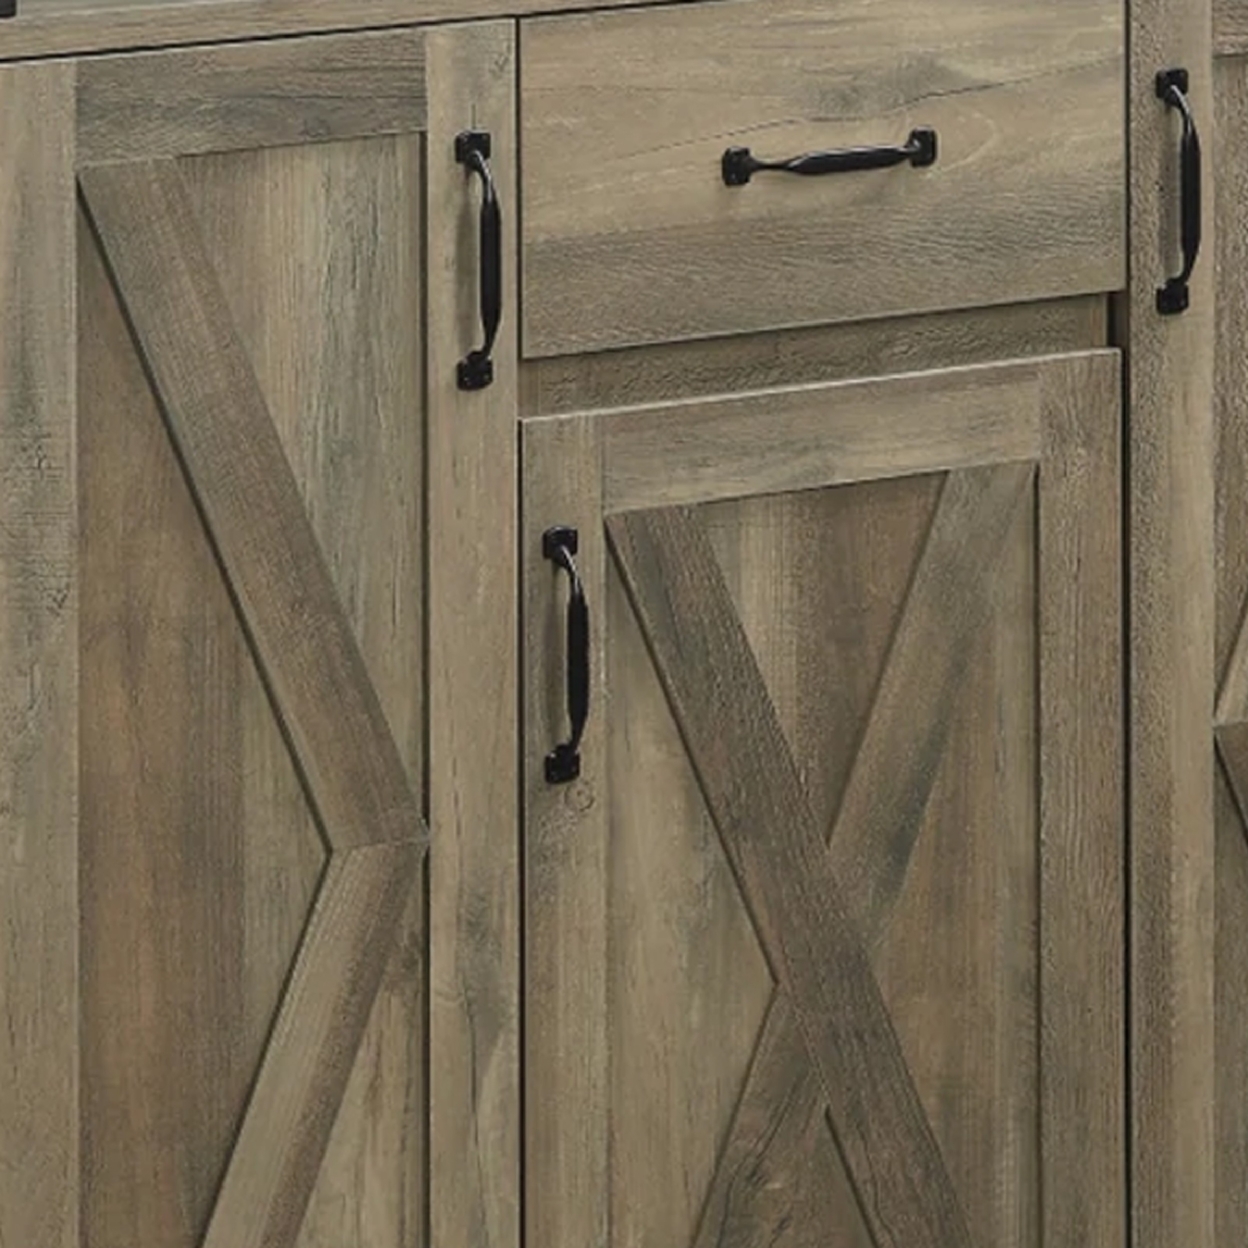 39 Inch Wood Sideboard Buffet Cabinet, 3 Barn Style Doors, Rustic Oak- Saltoro Sherpi